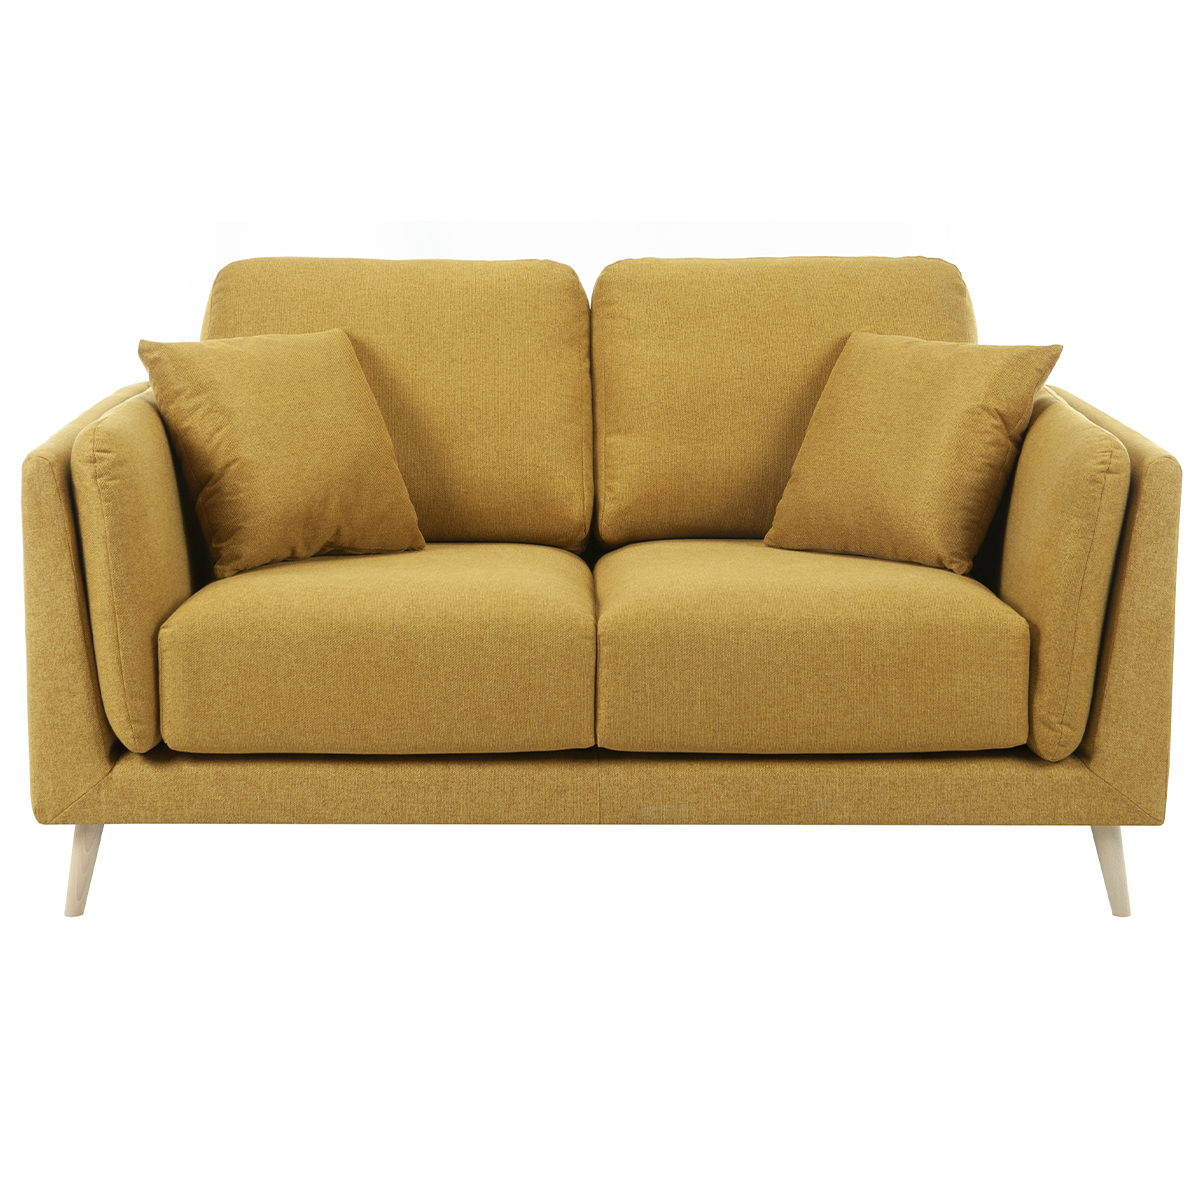 Canapé design 2 places en tissu jaune cumin VOGUE vue1